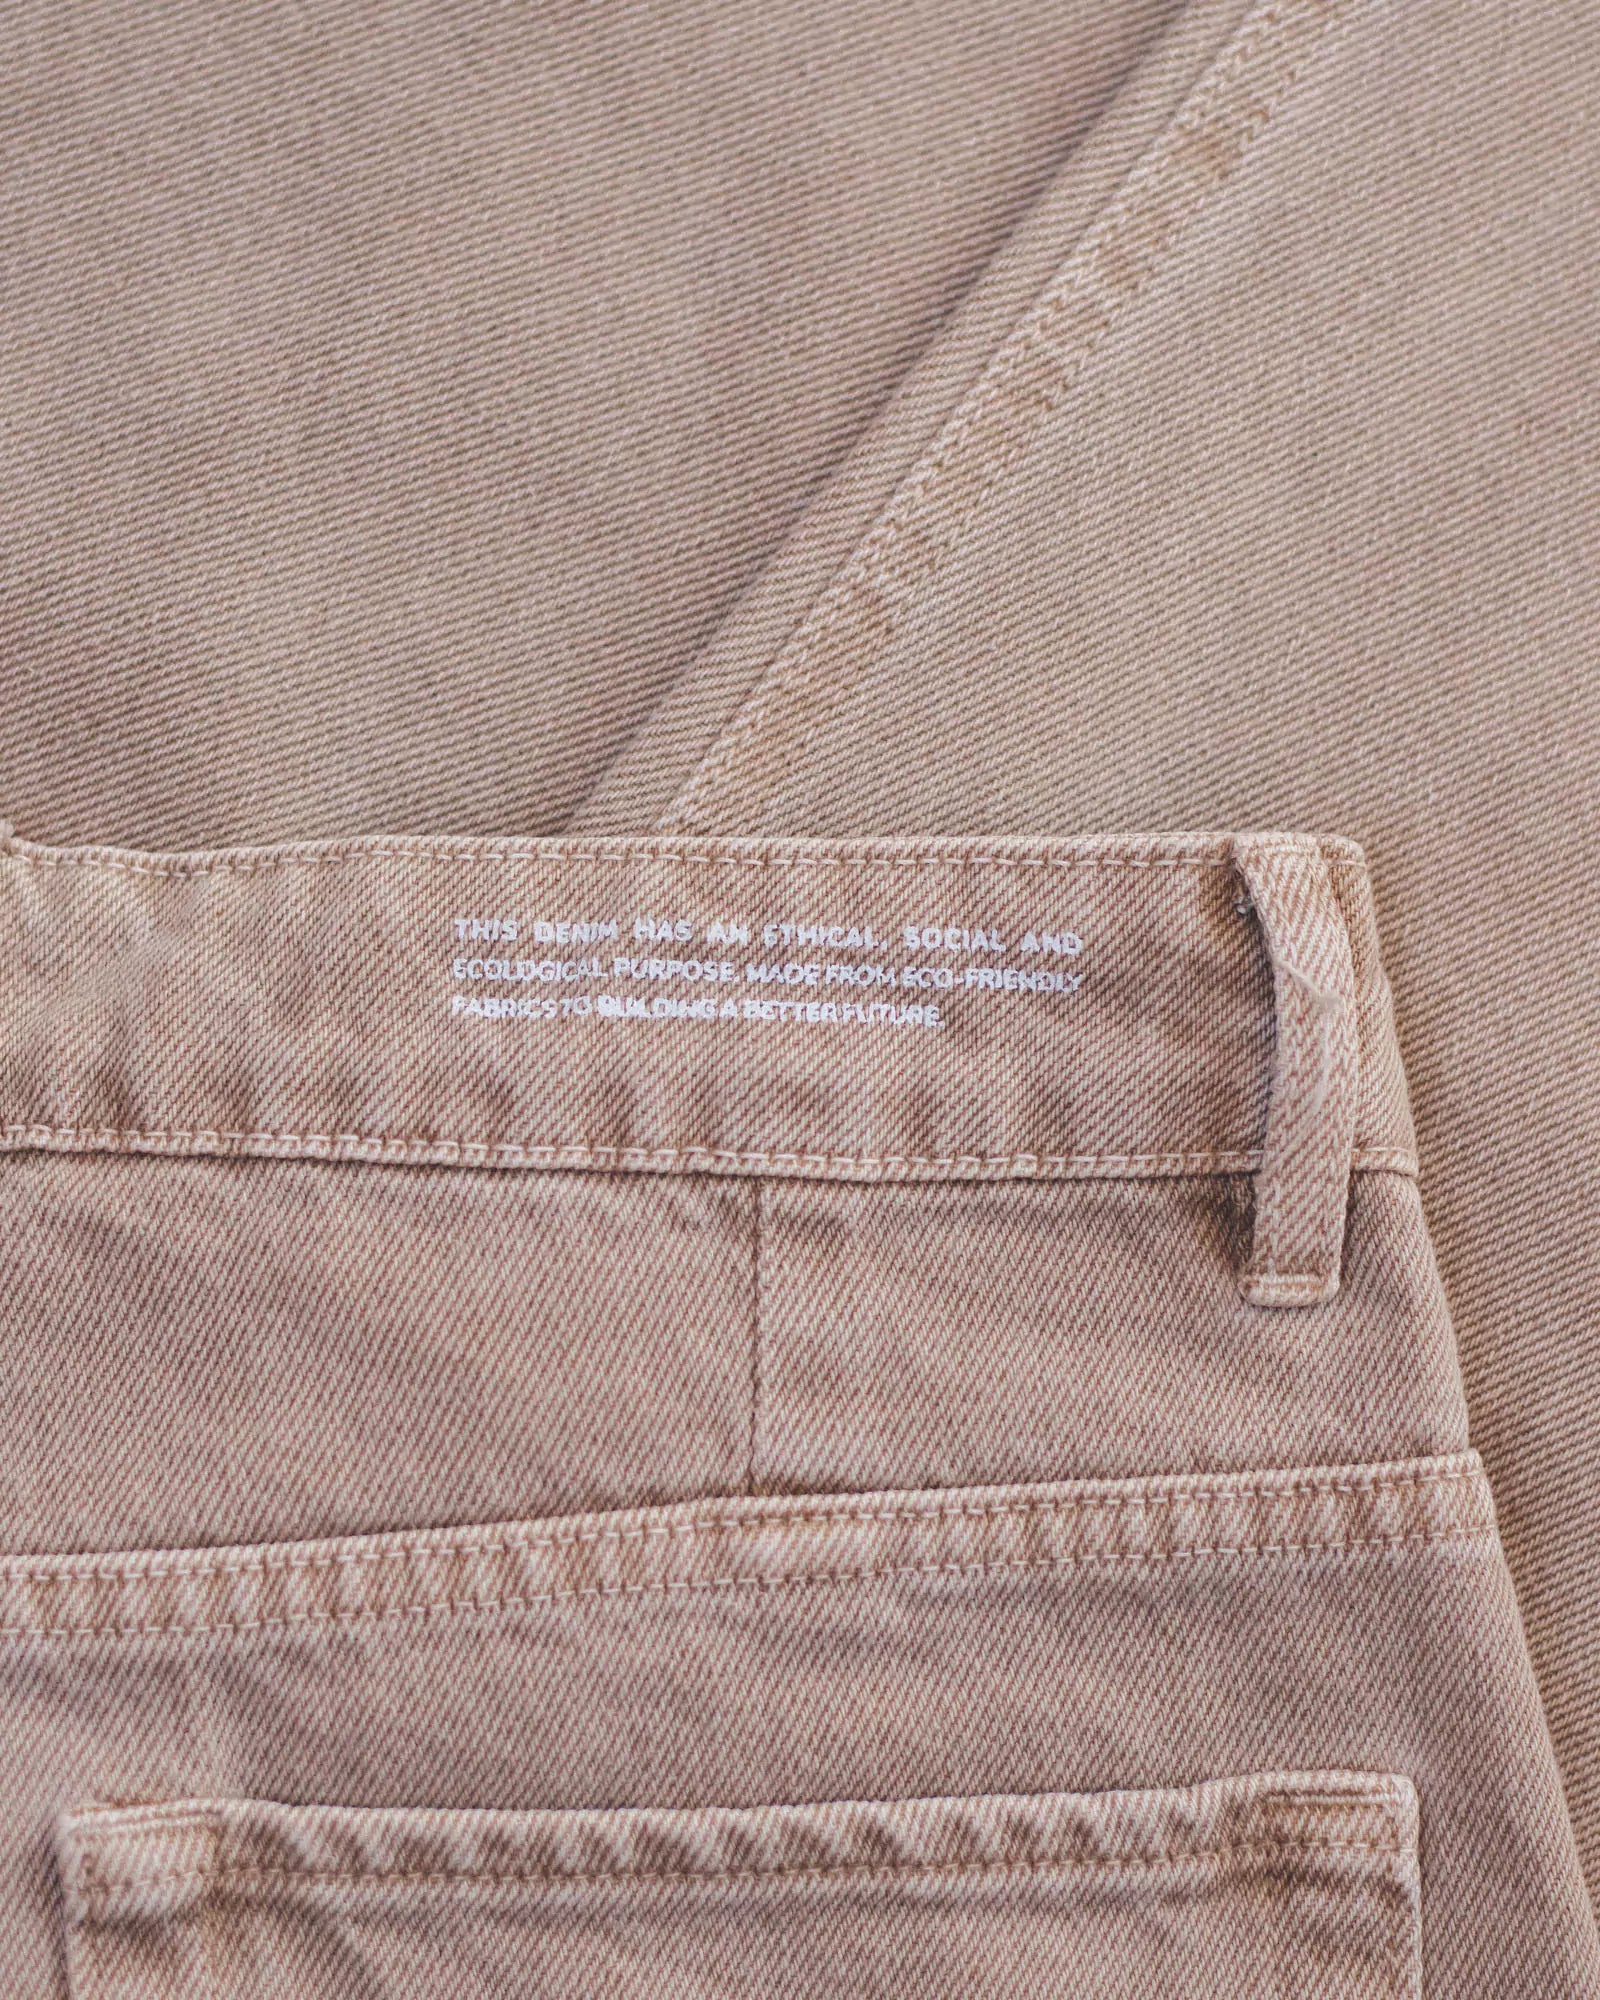 Calça Jeans Slouchy Marrom Claro Eco Denim™. Compre online moda sustentável e atemporal na Minimadeia. Roupas femininas estilosas, básicas e sustentáveis. Foto produto destaque